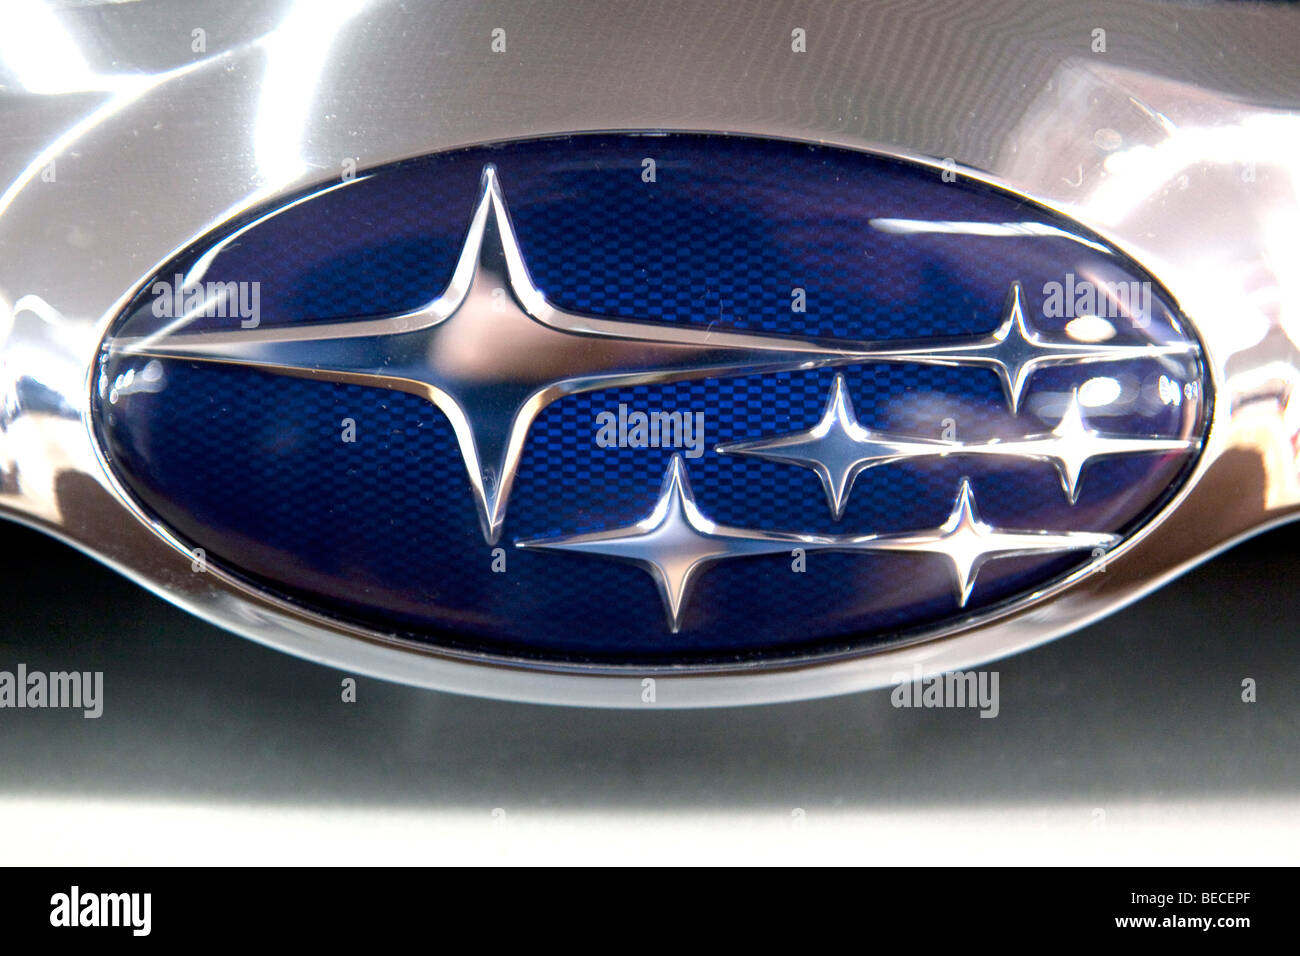 Subaru-Emblem auf einem Auto Stockfoto